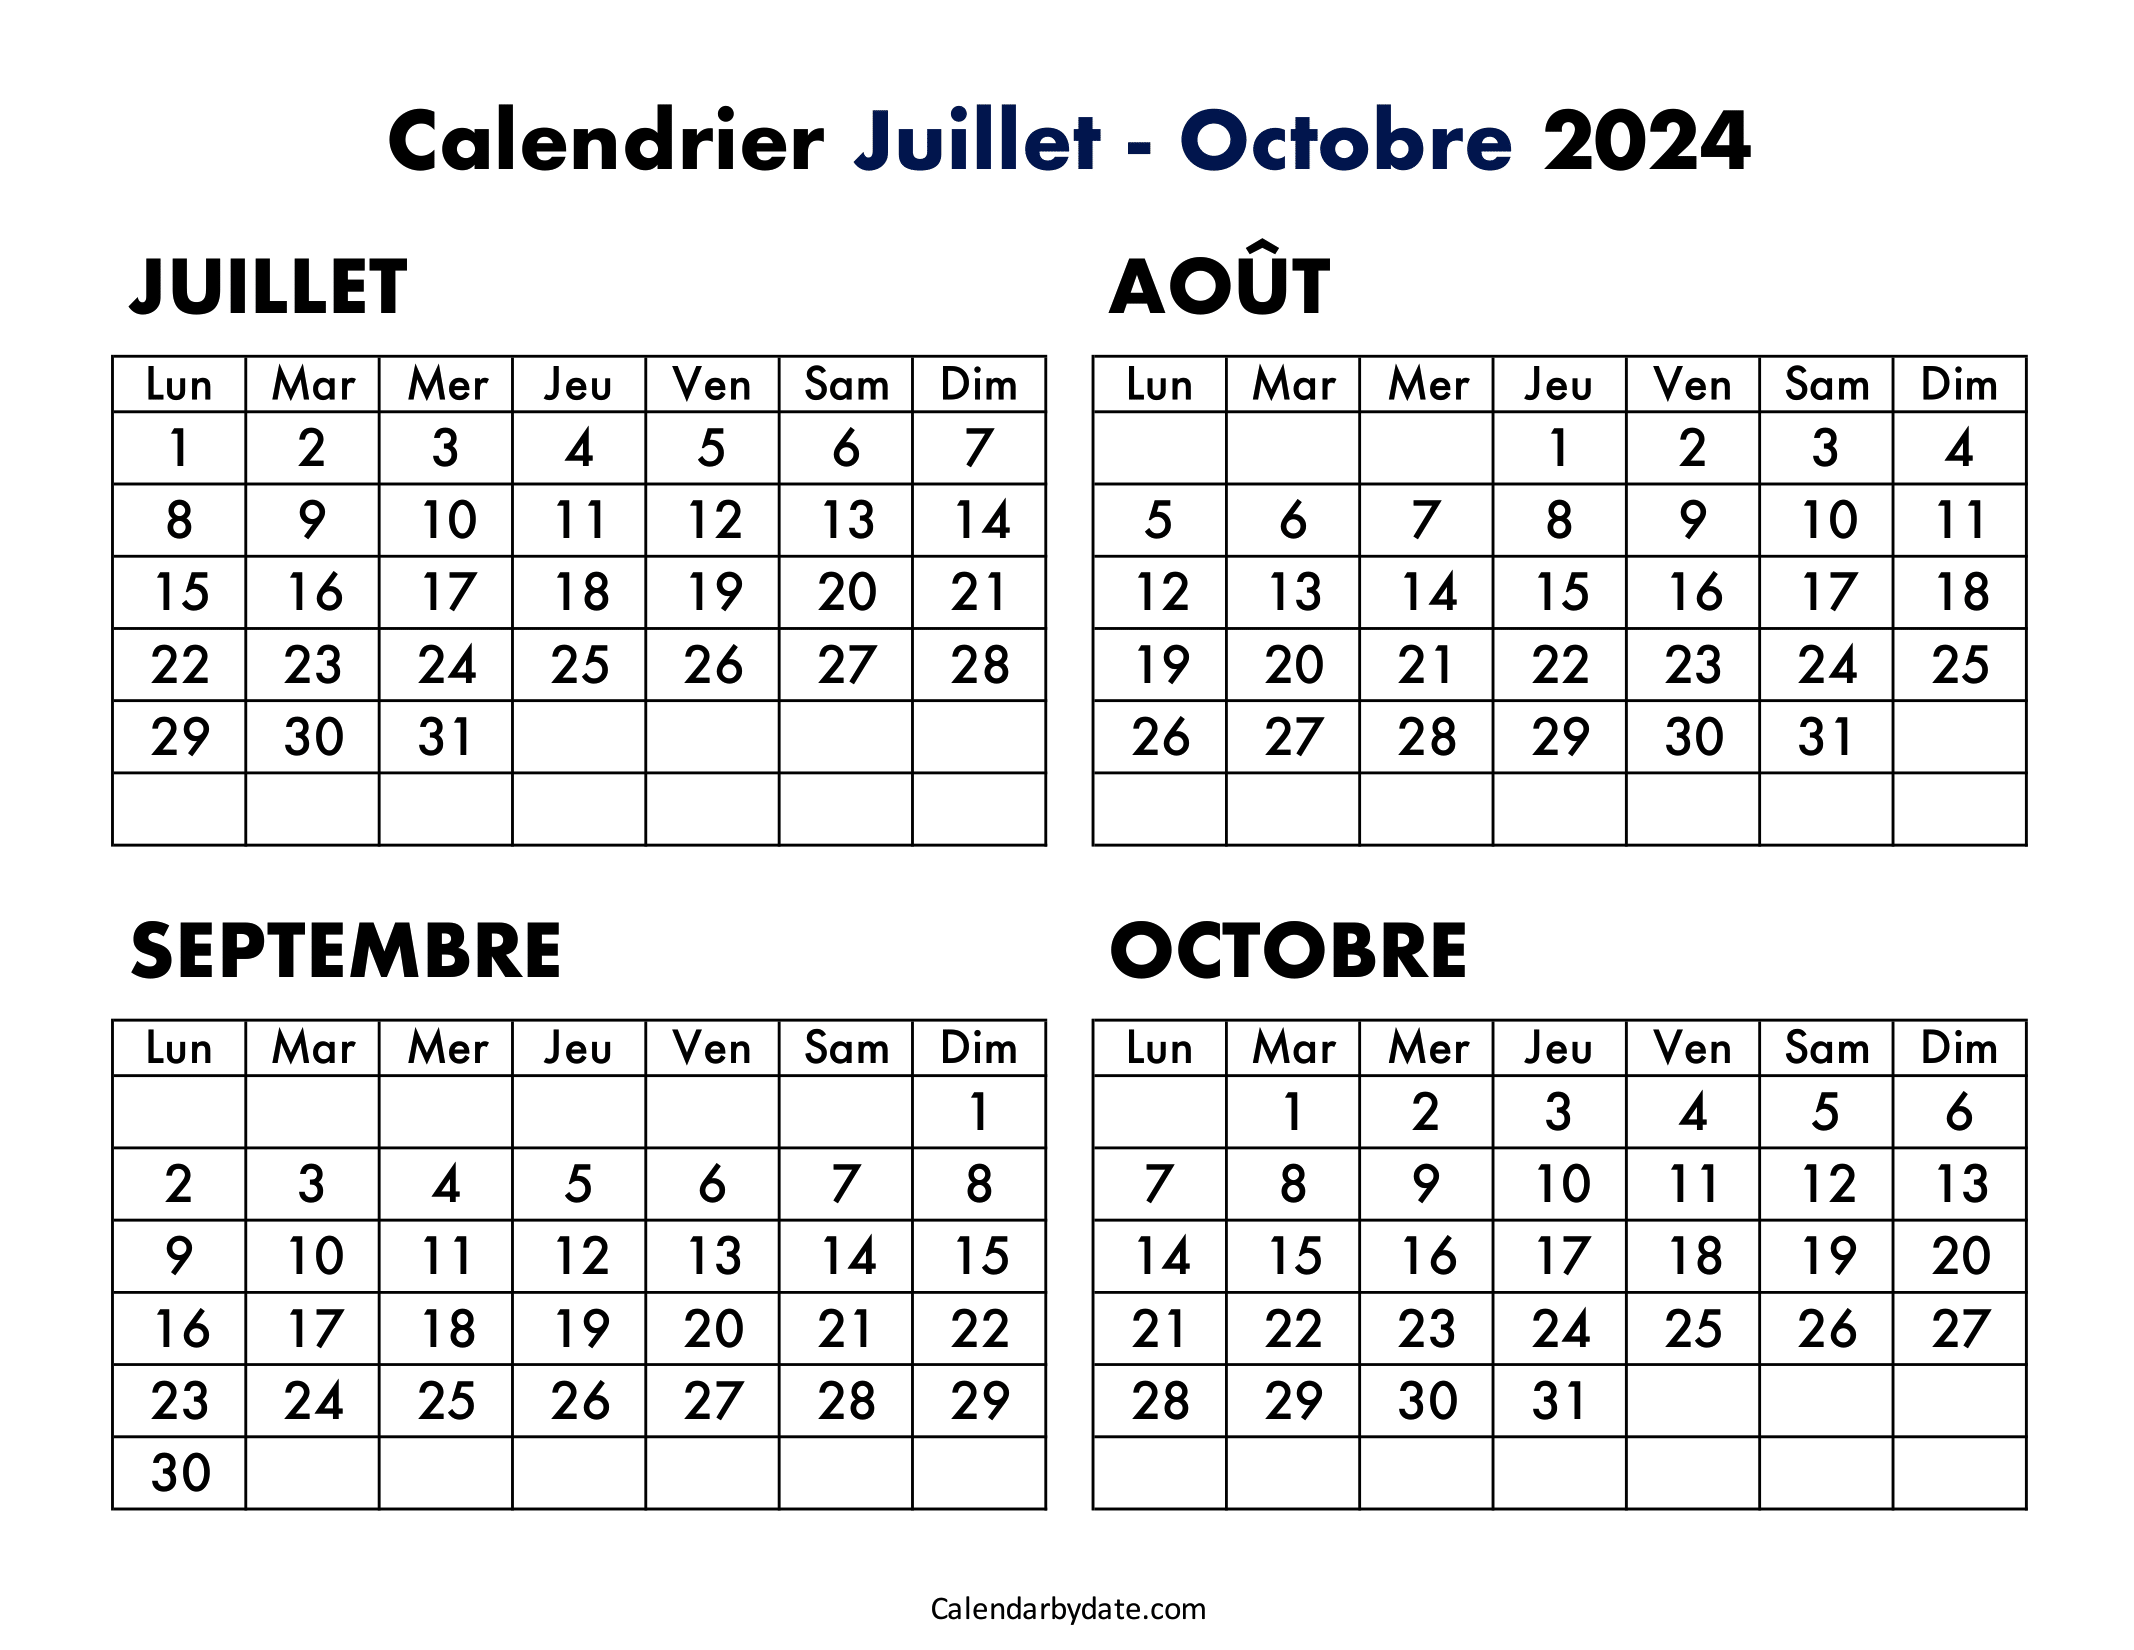 Calendrier juillet août septembre octobre 2024 imprimer